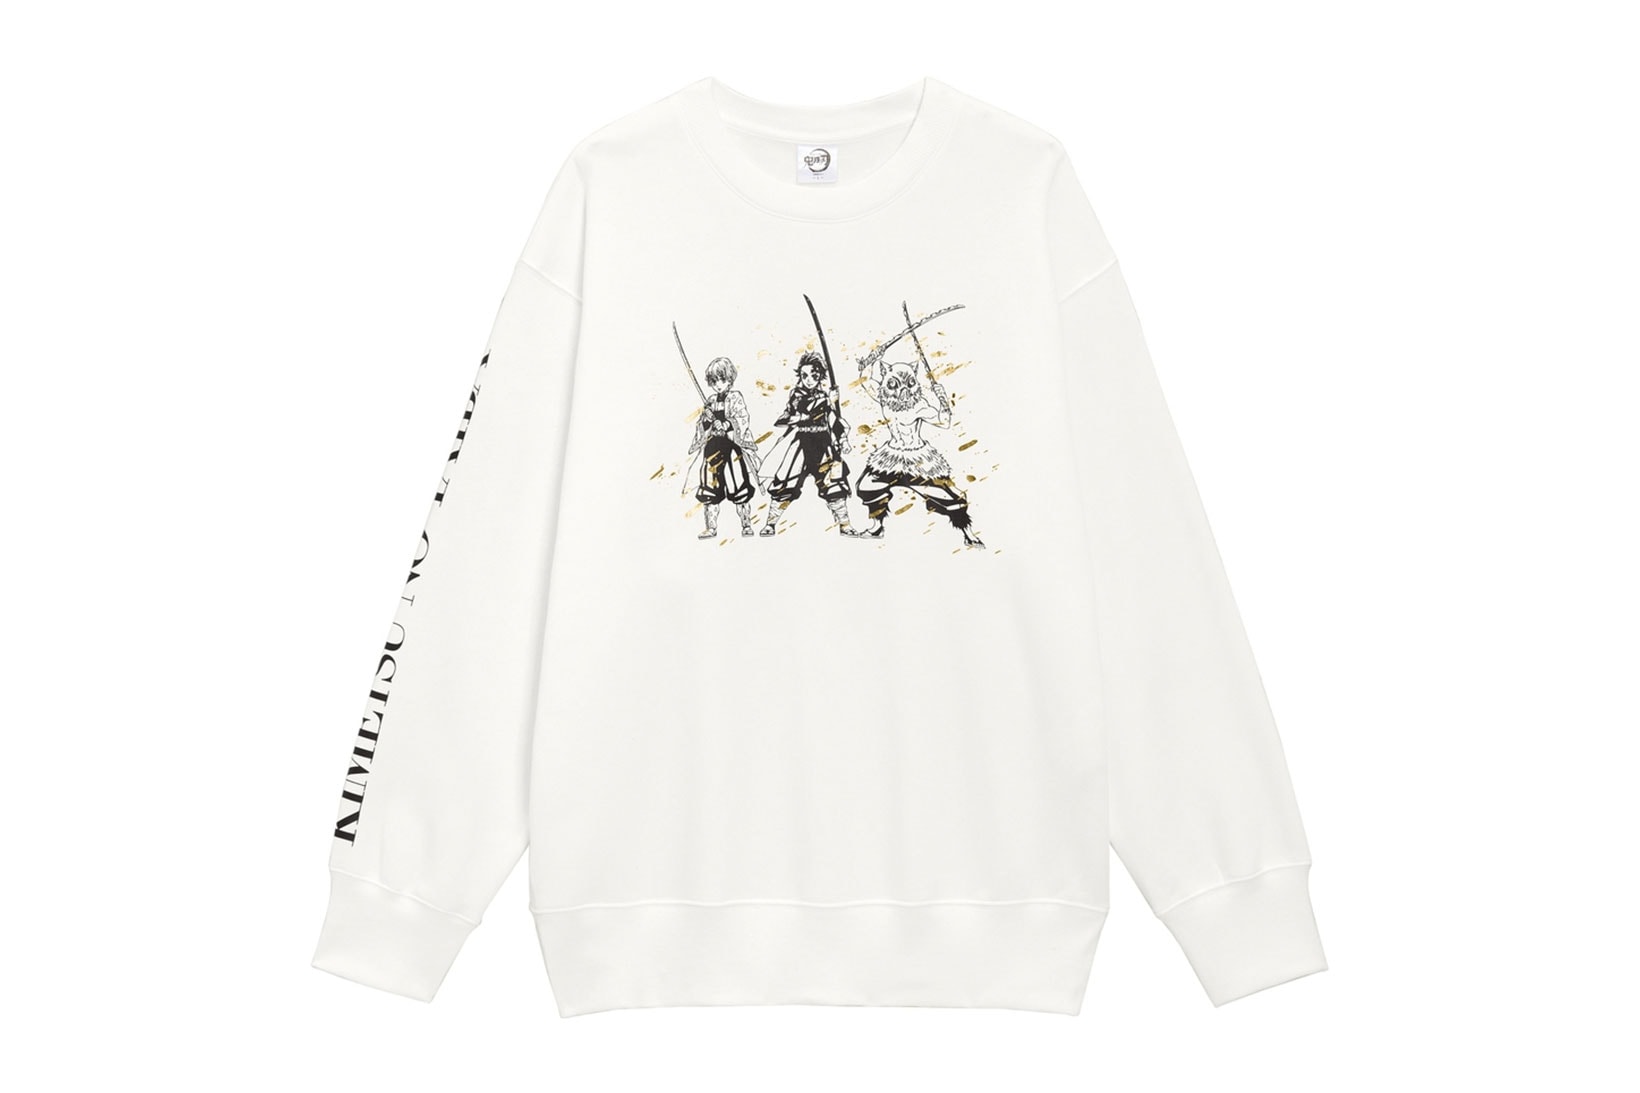 demon slayer kimetsu no yaiba GU uniqlo collaboration sweatshirts hoodies tshirts socks release date